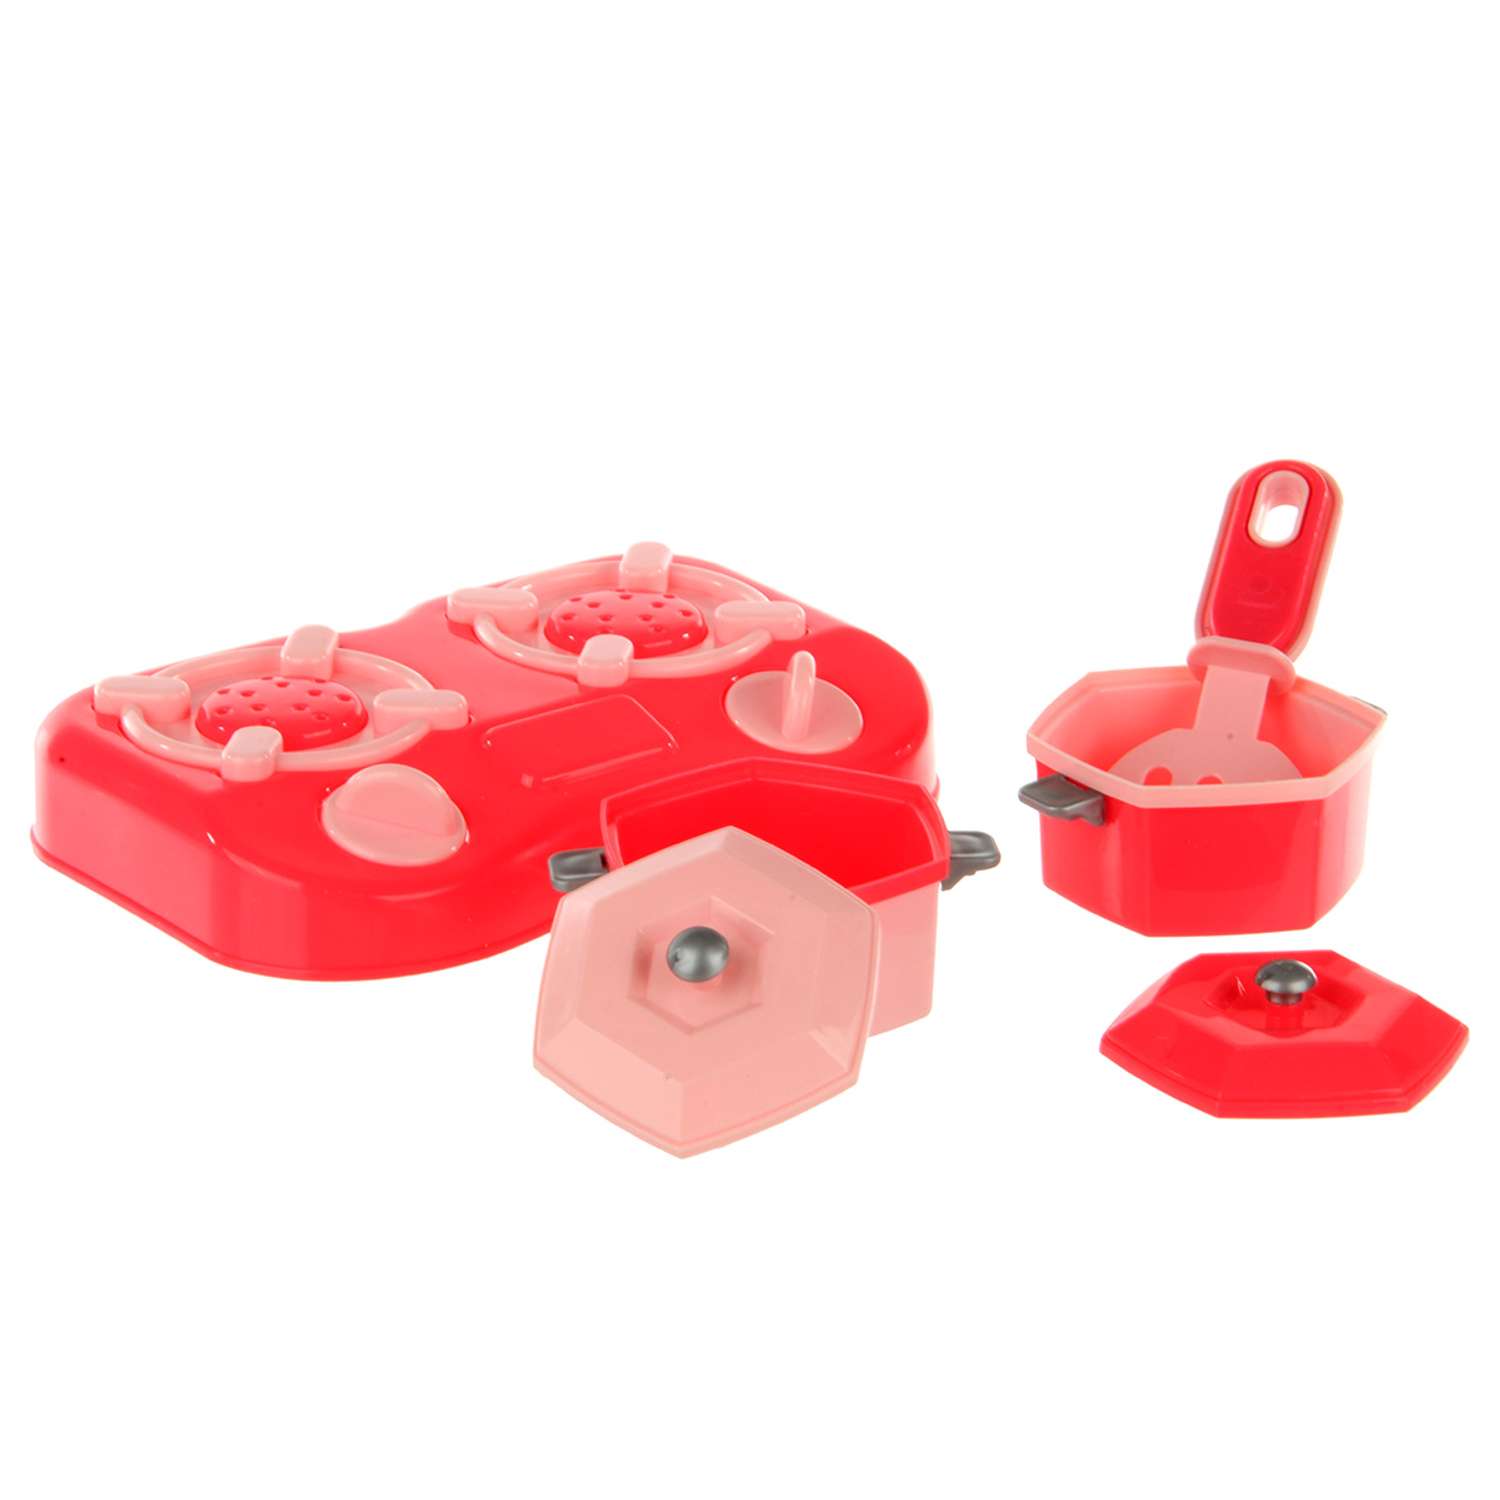 Детская посуда игрушечная Veld Co с плитой и продуктами - фото 5